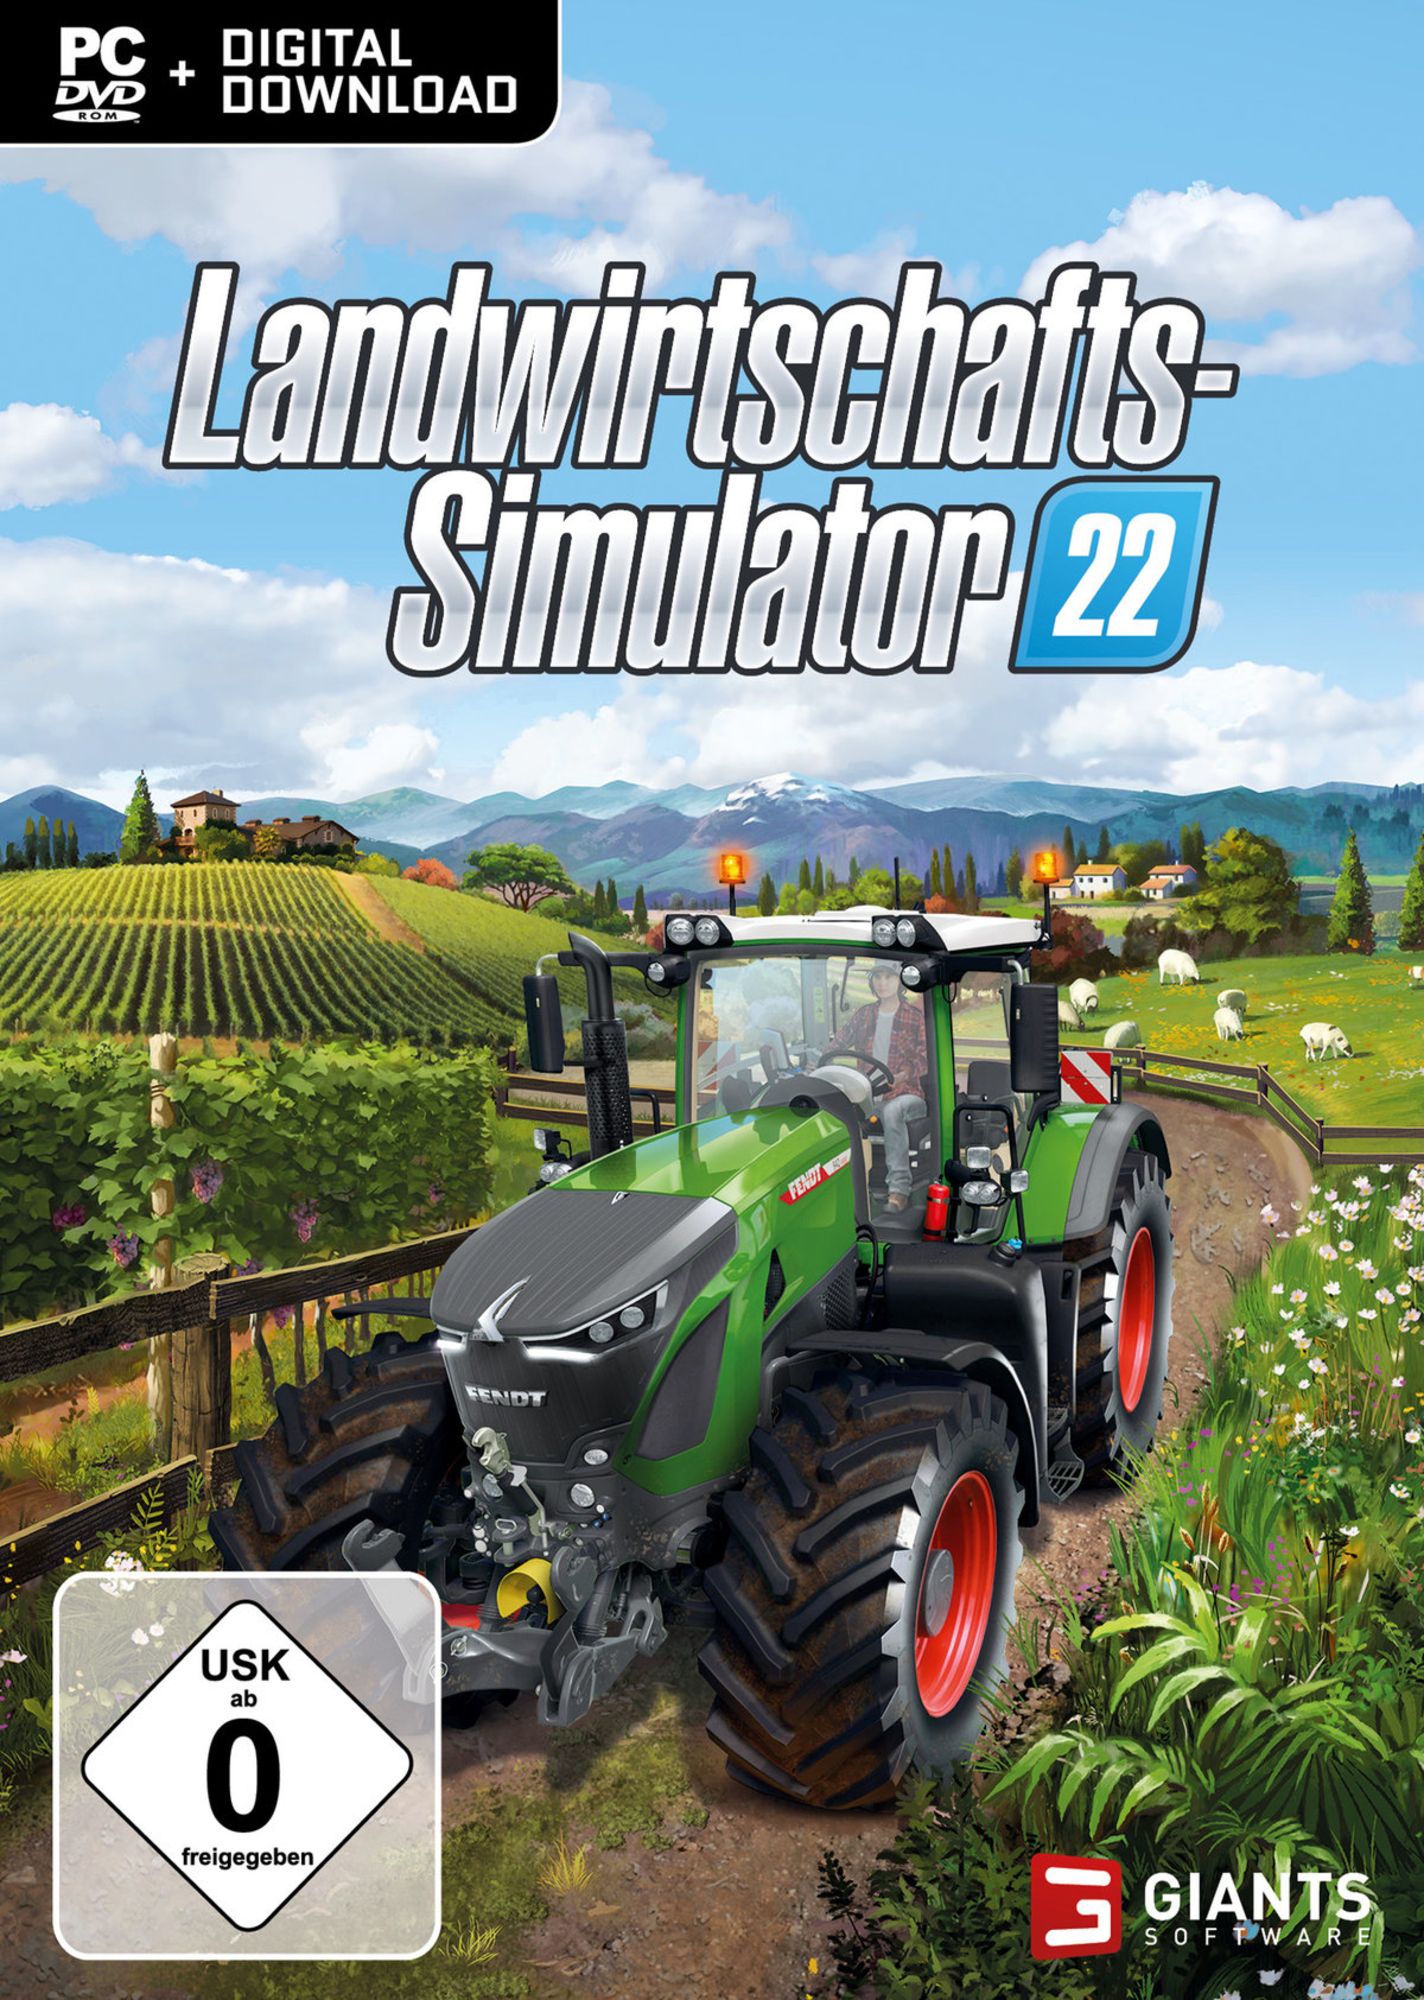 Mein Urteil zum Landwirtschafts-Simulator 22: Grafik top, Helfer